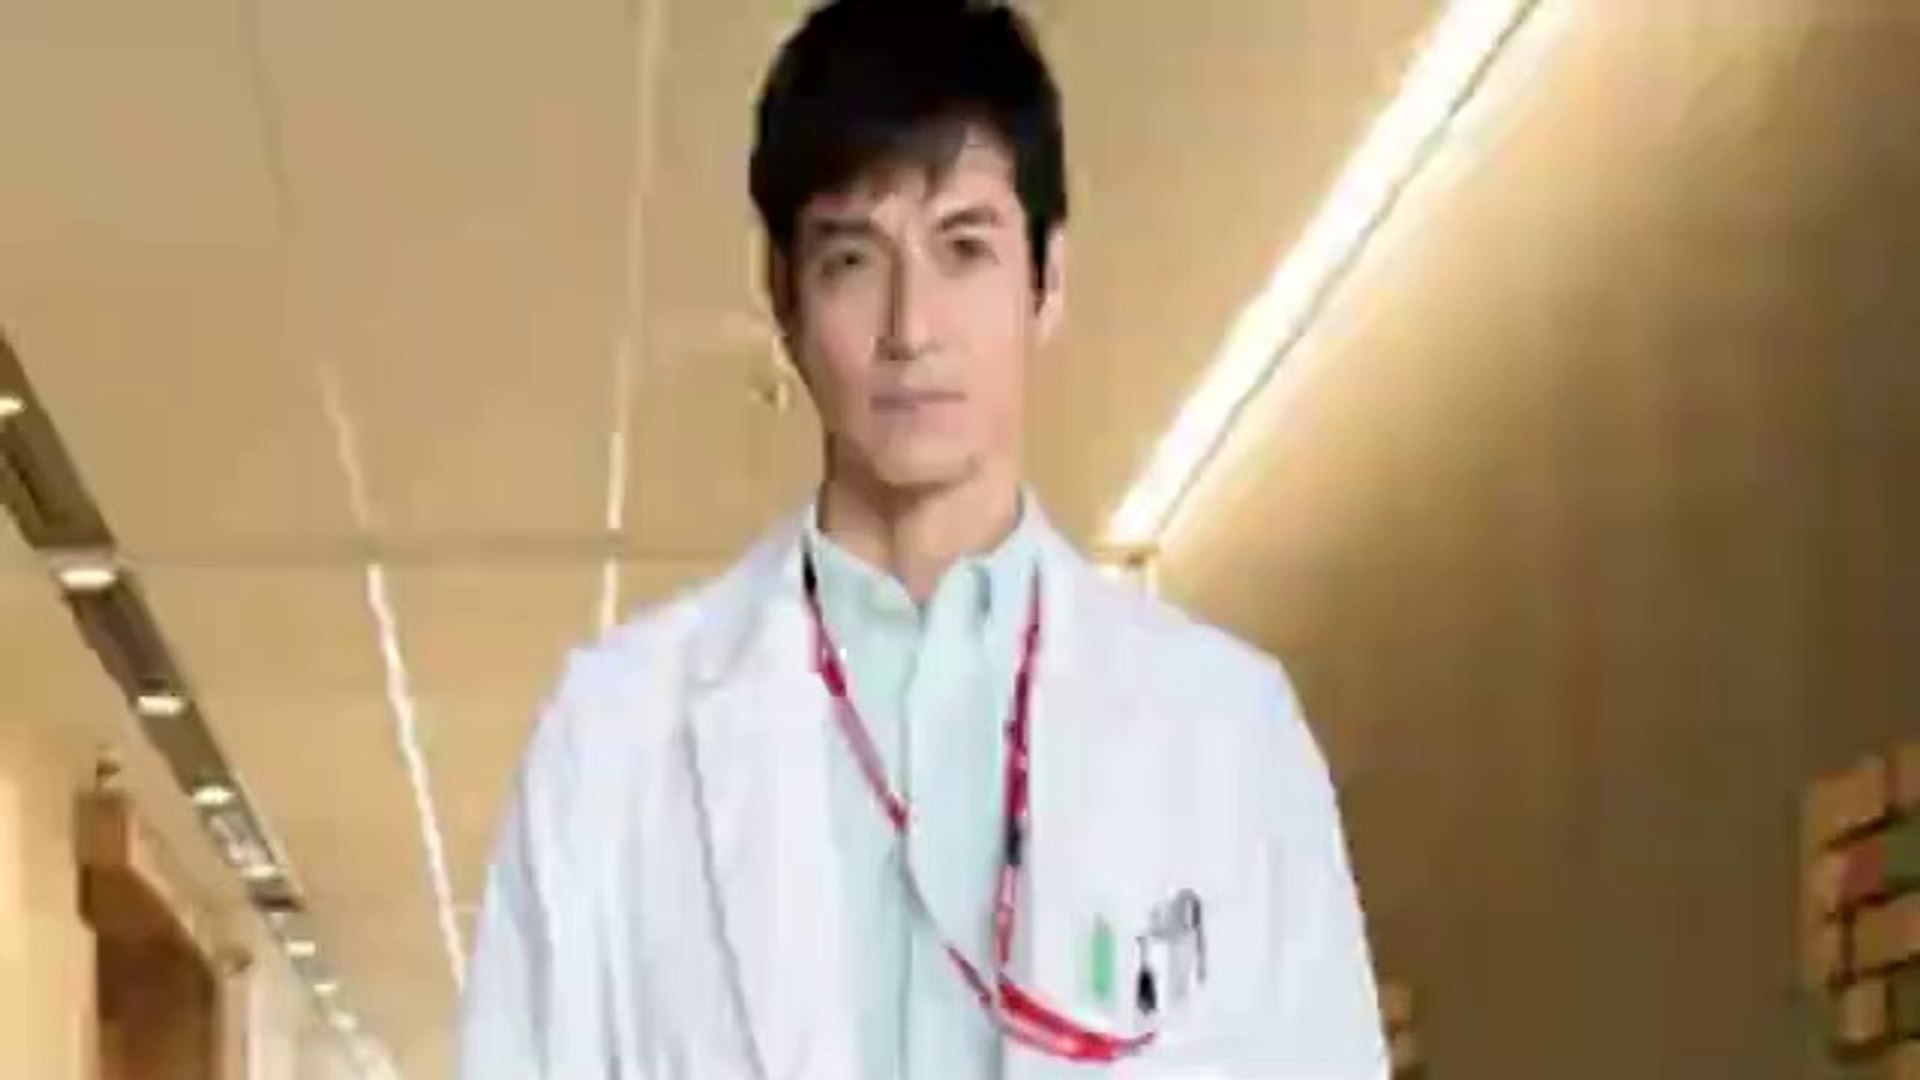 Doctors最強の名医21新春sp1月10日youtubeパンドラ 動画 Dailymotion